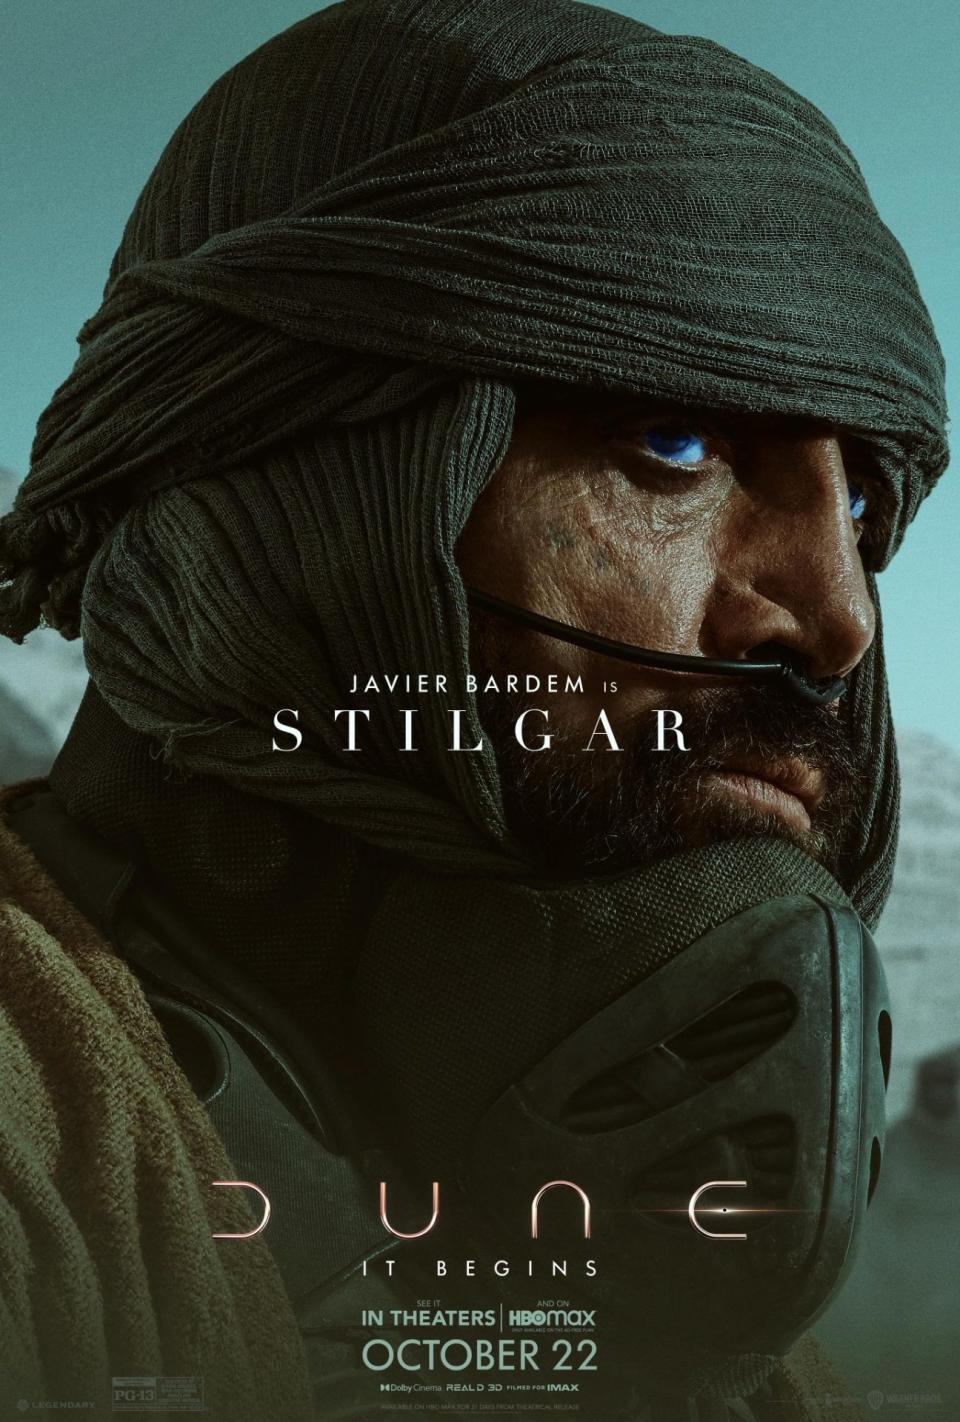 Dune character poster depicting Stilgar